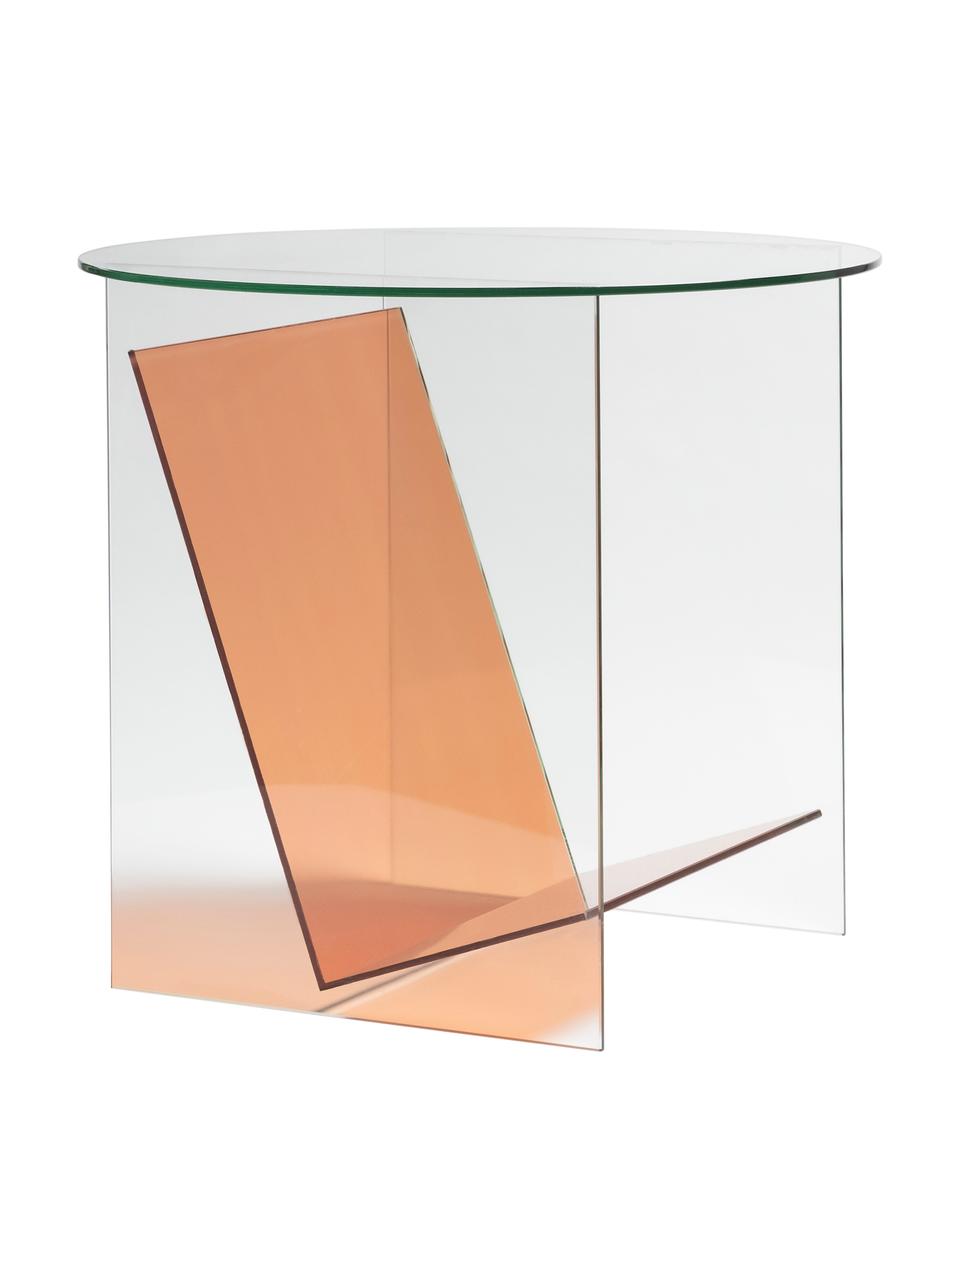 Skleněný odkládací stolek Tabloid, Sklo, Transparentní, oranžová, Ø 50 cm, V 46 cm